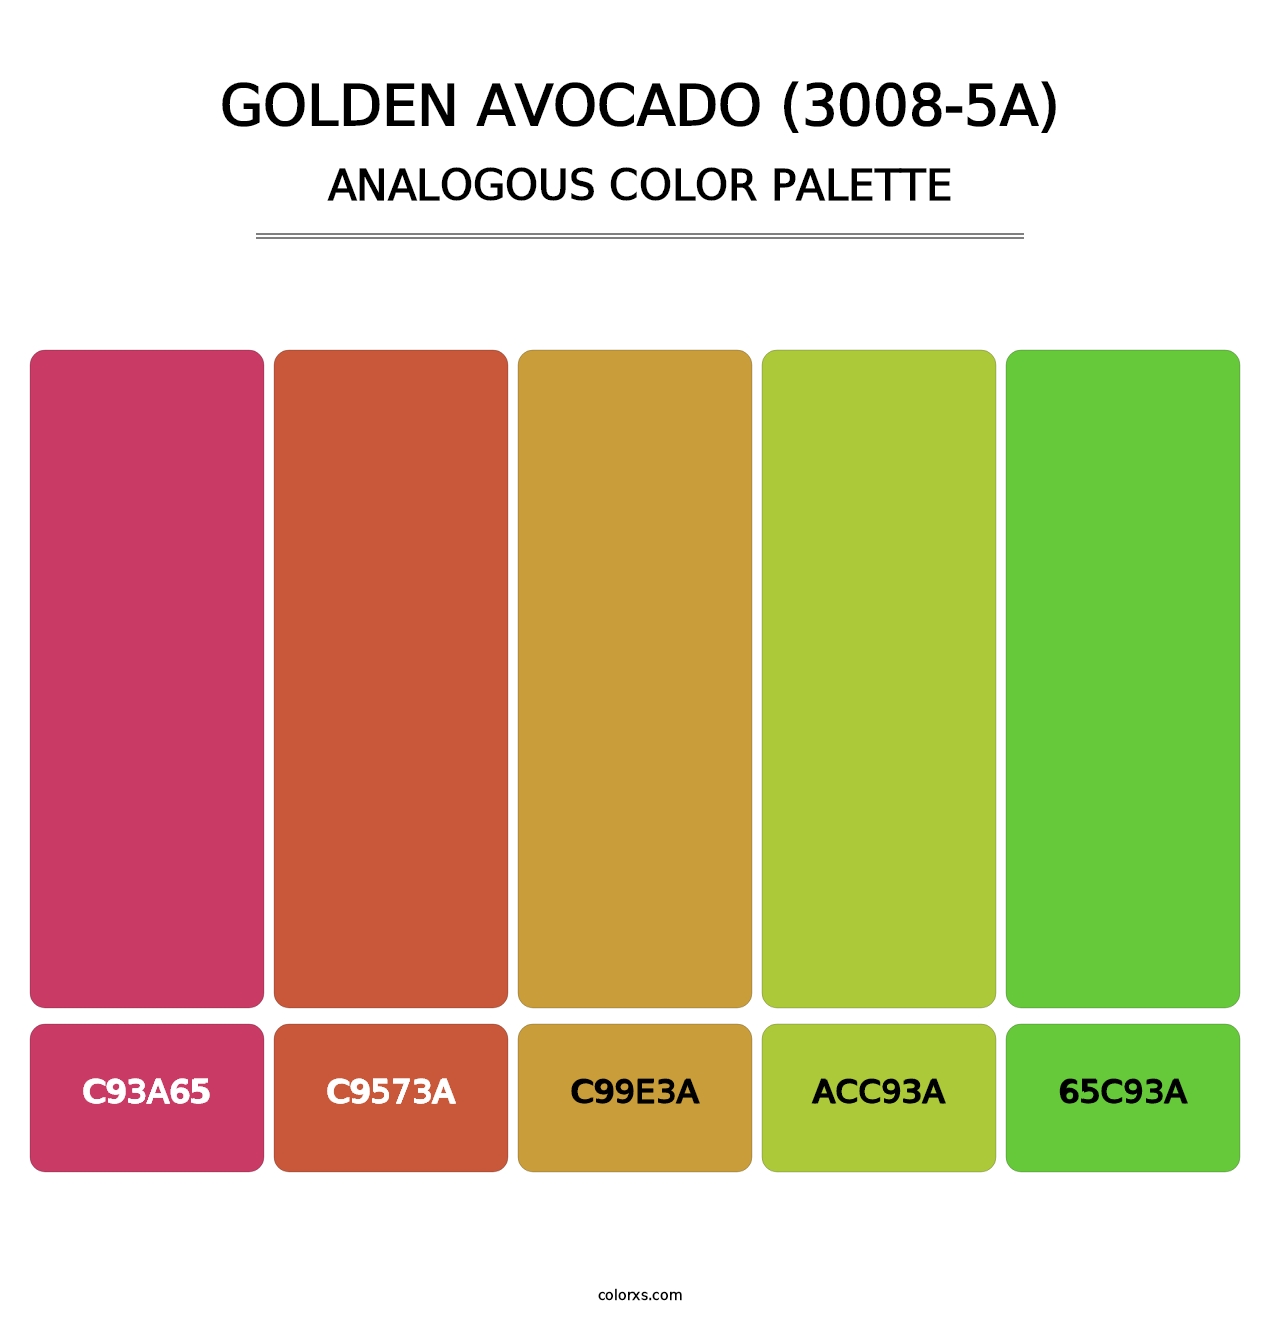 Golden Avocado (3008-5A) - Analogous Color Palette